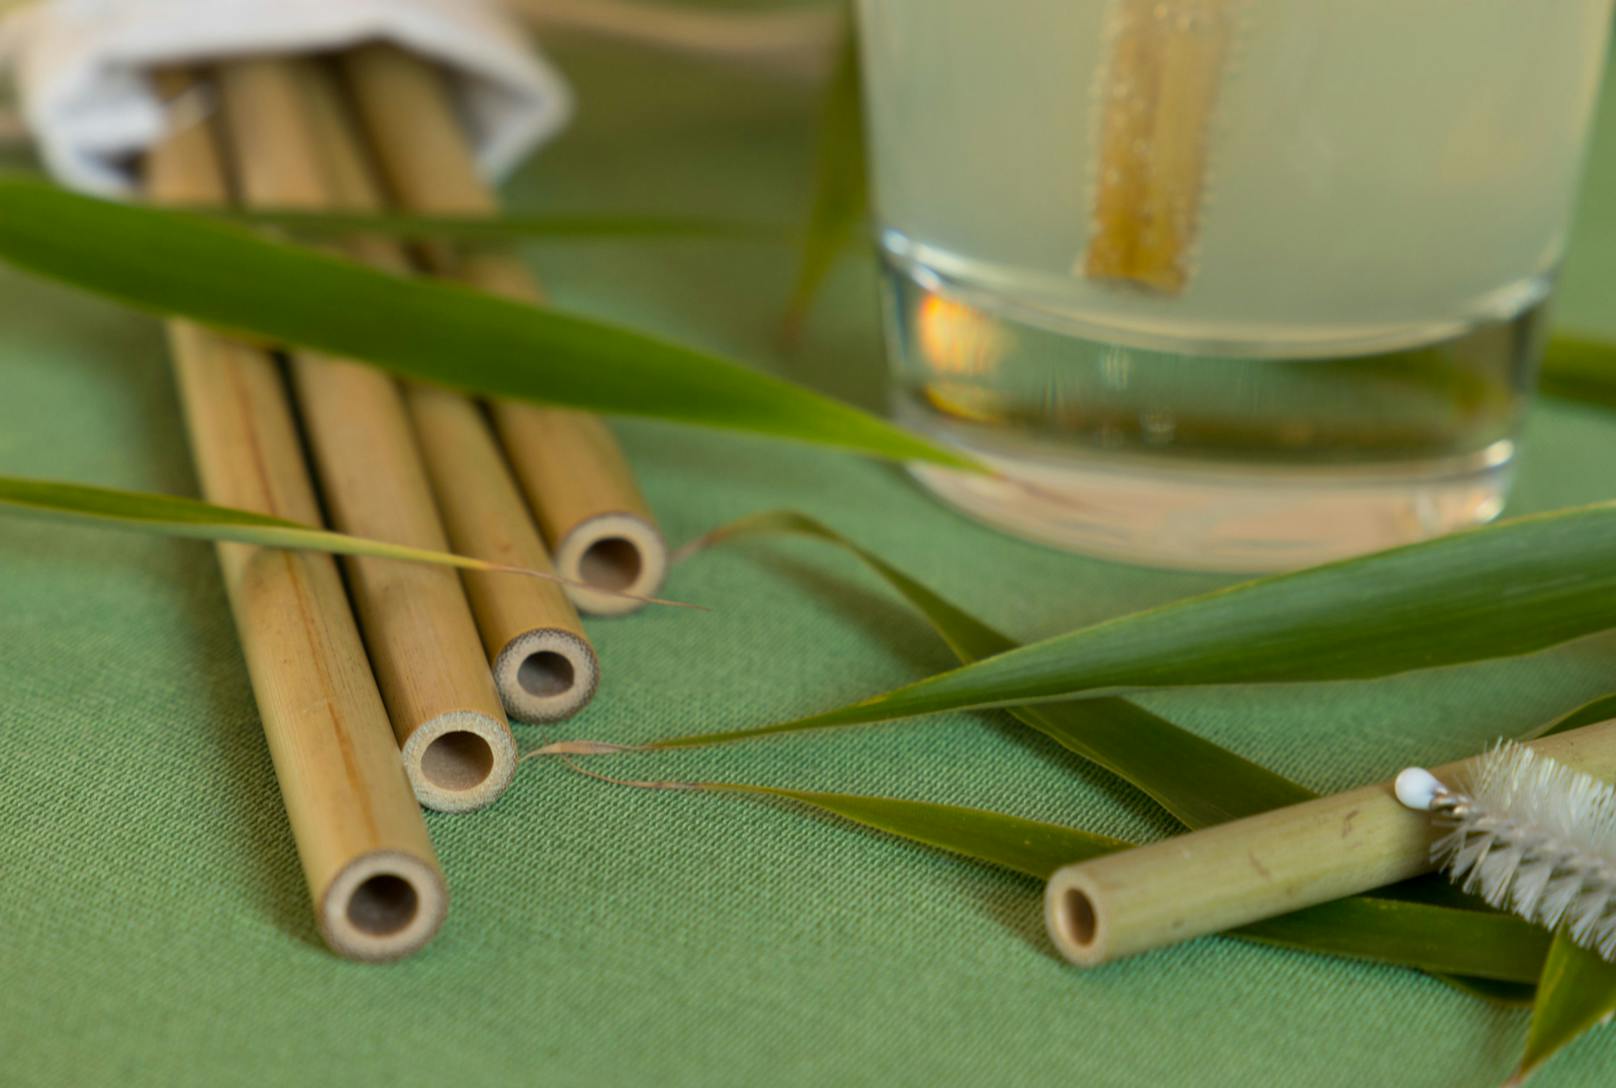 <strong>Bambus-Strohhalm:&nbsp;</strong>Trinkhalme aus Bambus sind die kurzlebigste Variante der wiederverwendbaren Strohhalme. Sie gibt es nicht gebogenen oder gefärbten, sondern nur so, wie sie in der Natur wachsen. Das Naturprodukt kommt zwar mit einem Beigeschmack daher, ist dafür aber bruchsicher.